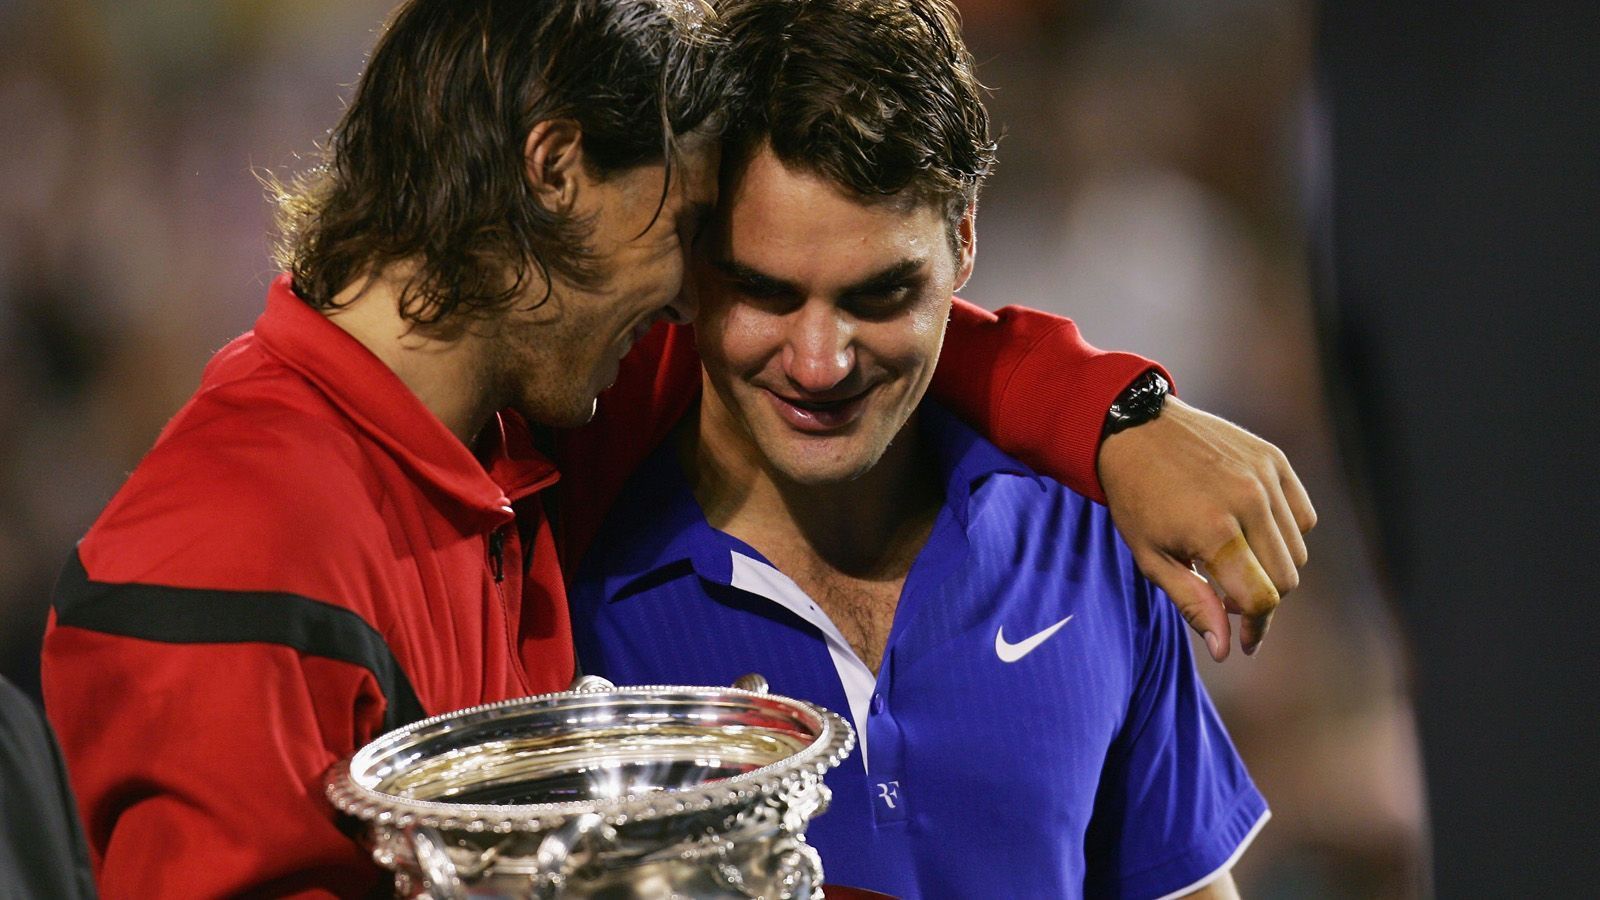 
                <strong>Federer vs. Nadal - eine Rivalität für die Ewigkeit</strong><br>
                "Er ist zurück, weil er auf allen Belägen ein kompletter Spieler ist. Ein Halbfinale gegen Roger ist eine große Sache. Wir haben die wichtigsten Momente in unserer Karriere zusammen geteilt", sagt der 33 Jahre alte Nadal über seinen Kontrahenten aus der Schweiz. "Als ich mich zum Sand-Comeback entschlossen habe, dann gerade, um gegen Rafa zu spielen", sagt wiederum Federer nach dem Viertelfinalsieg über Landsmann Stan Wawrinka über den Rivalen. Sowohl Nadal als auch Federer freuen sich also auf das Match - wir schauen auf die größten Giganten-Duelle der beiden zurück.
              